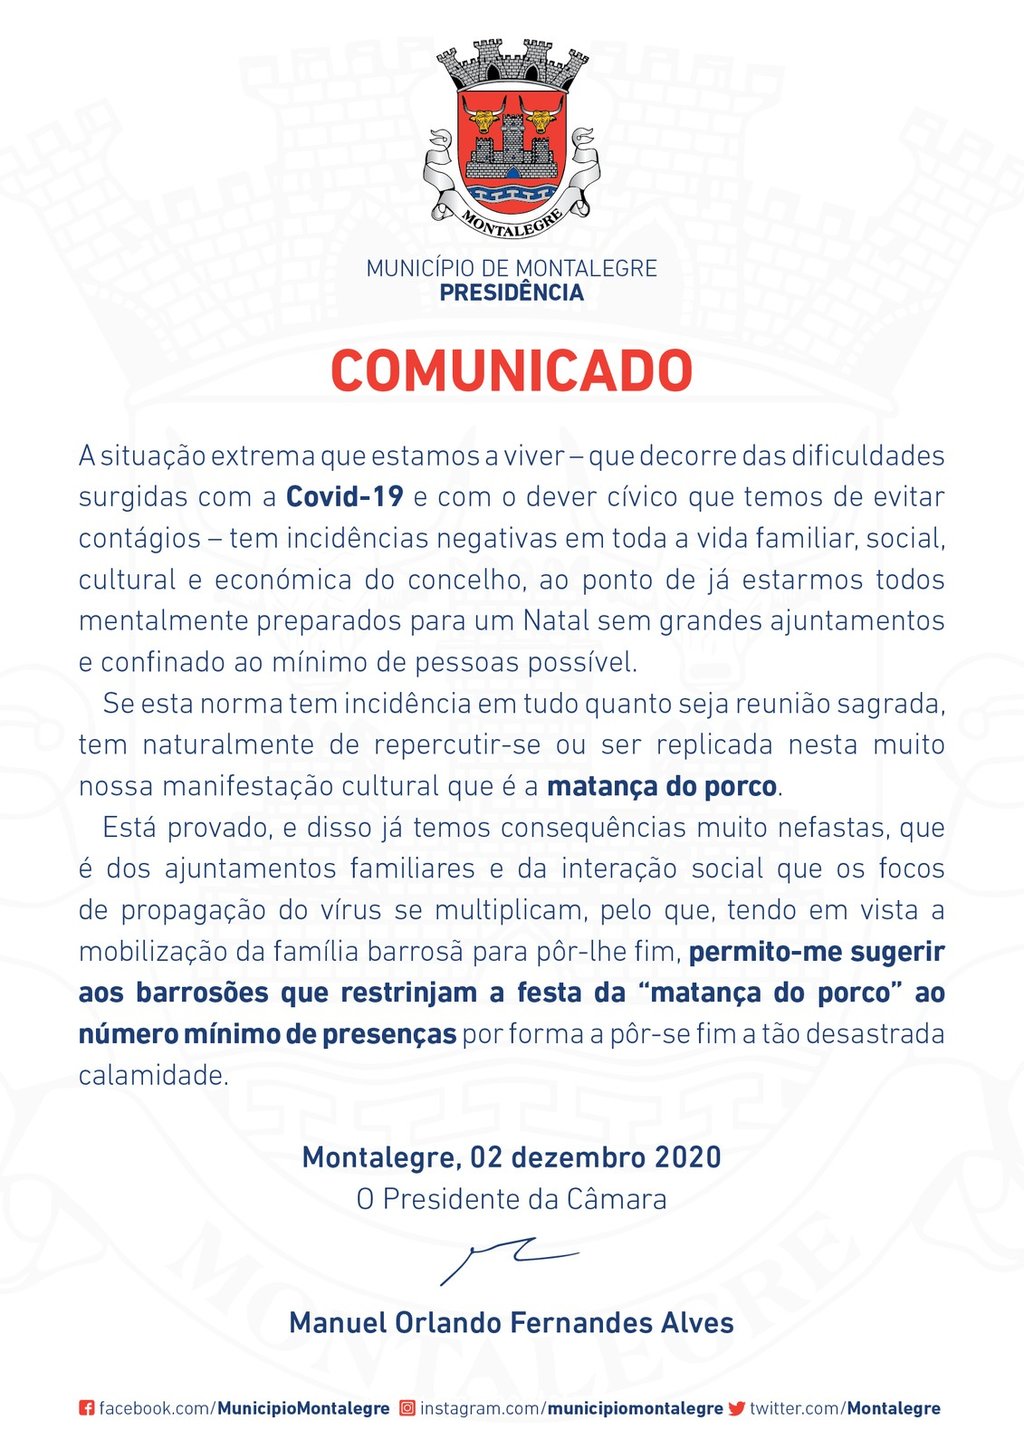 Municipio de montalegre   comunicado  2 dezembro 2020  1 1024 2500